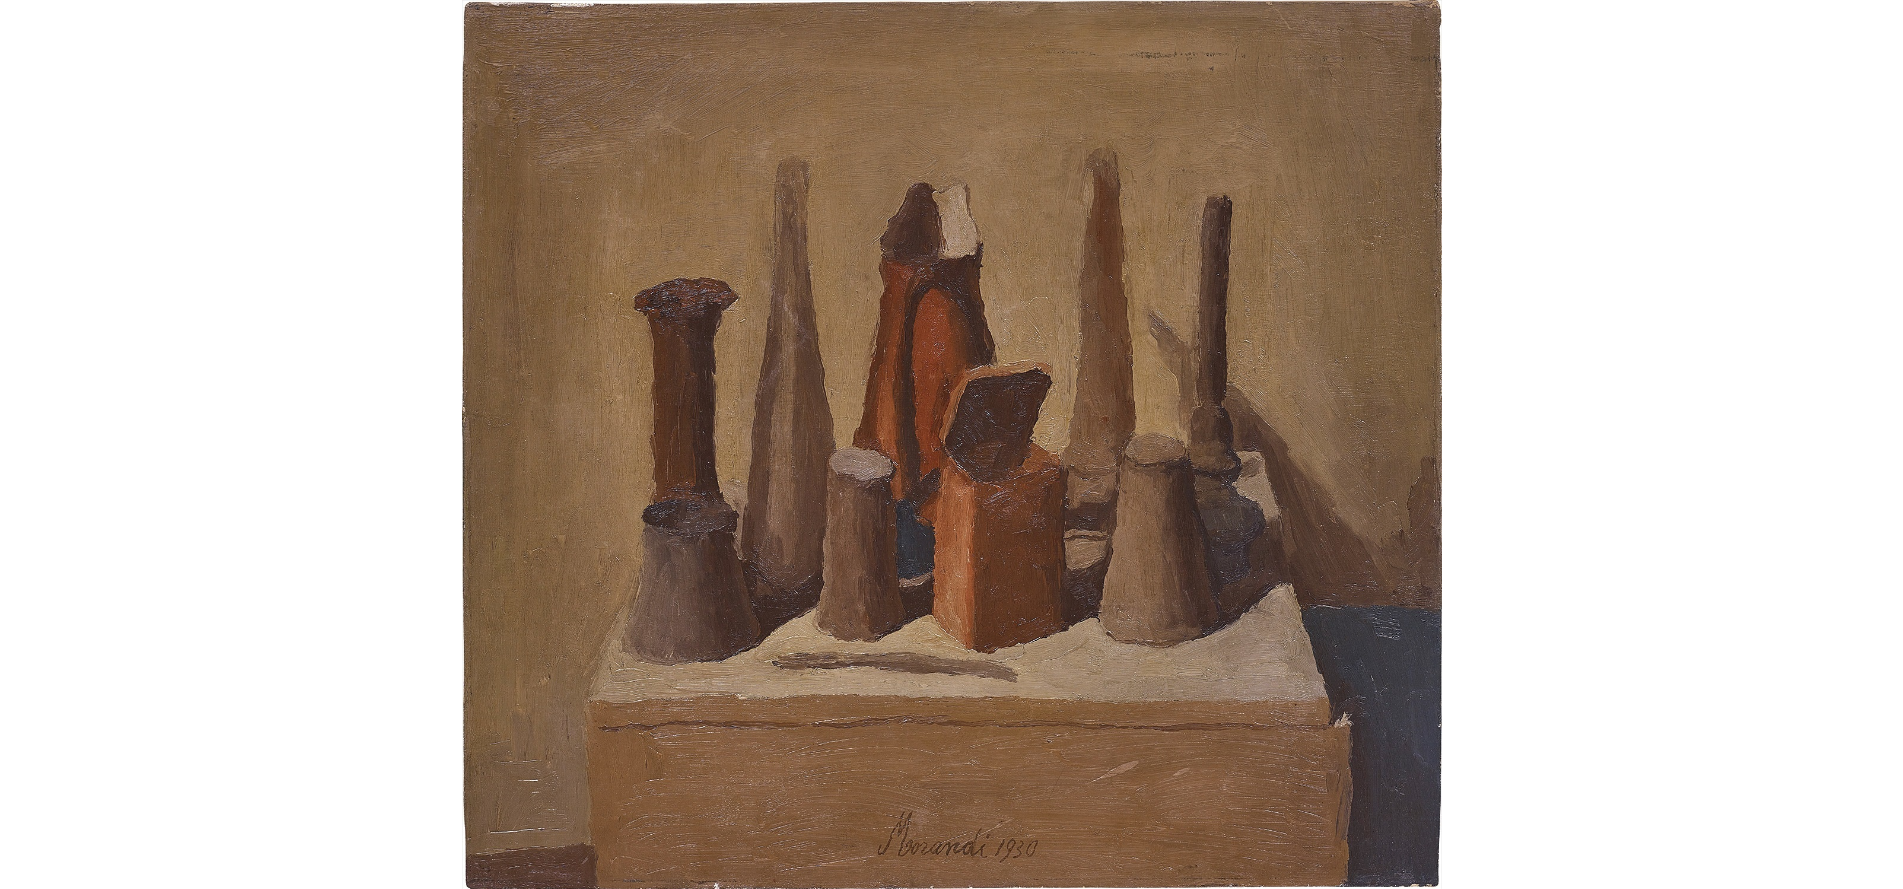 LOTTO 31 - Giorgio Morandi, Natura morta, 1930. Oil on canvas, 55 x 61 cm. Stima: 600-800.000$. Courtesy: Phillips.